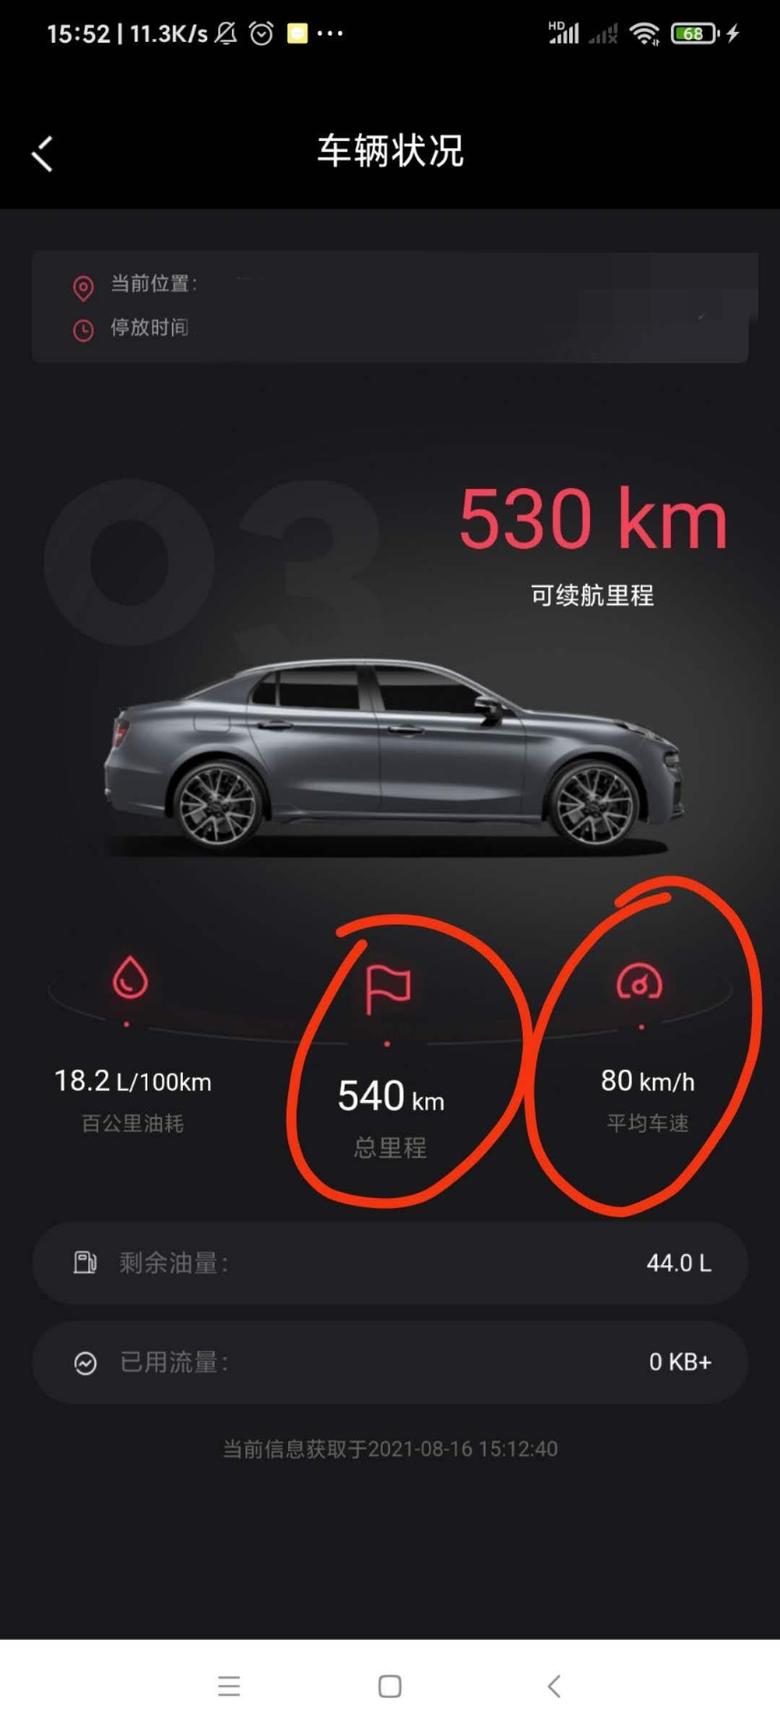 领克03 表显几十公里，均速13，app上显示几百公里，均速80，我是不是被坑了？